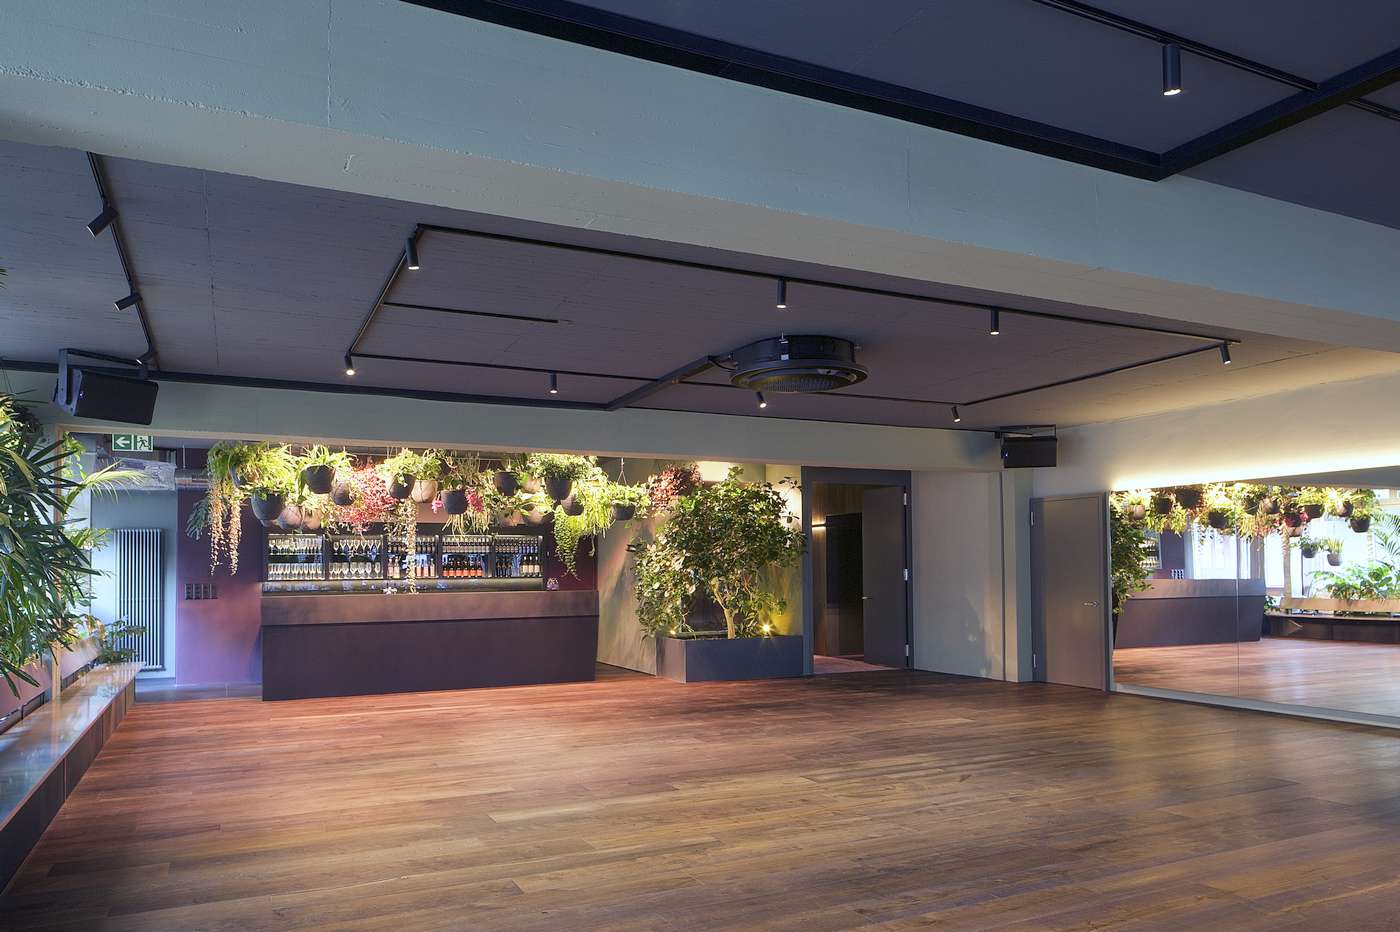 Raum mieten Zürich Saal mit Bar, Spiegelwand und Klimaanlage für Konzerte, Tanzabende, festliche Anlässe, Geschäftspräsentationen